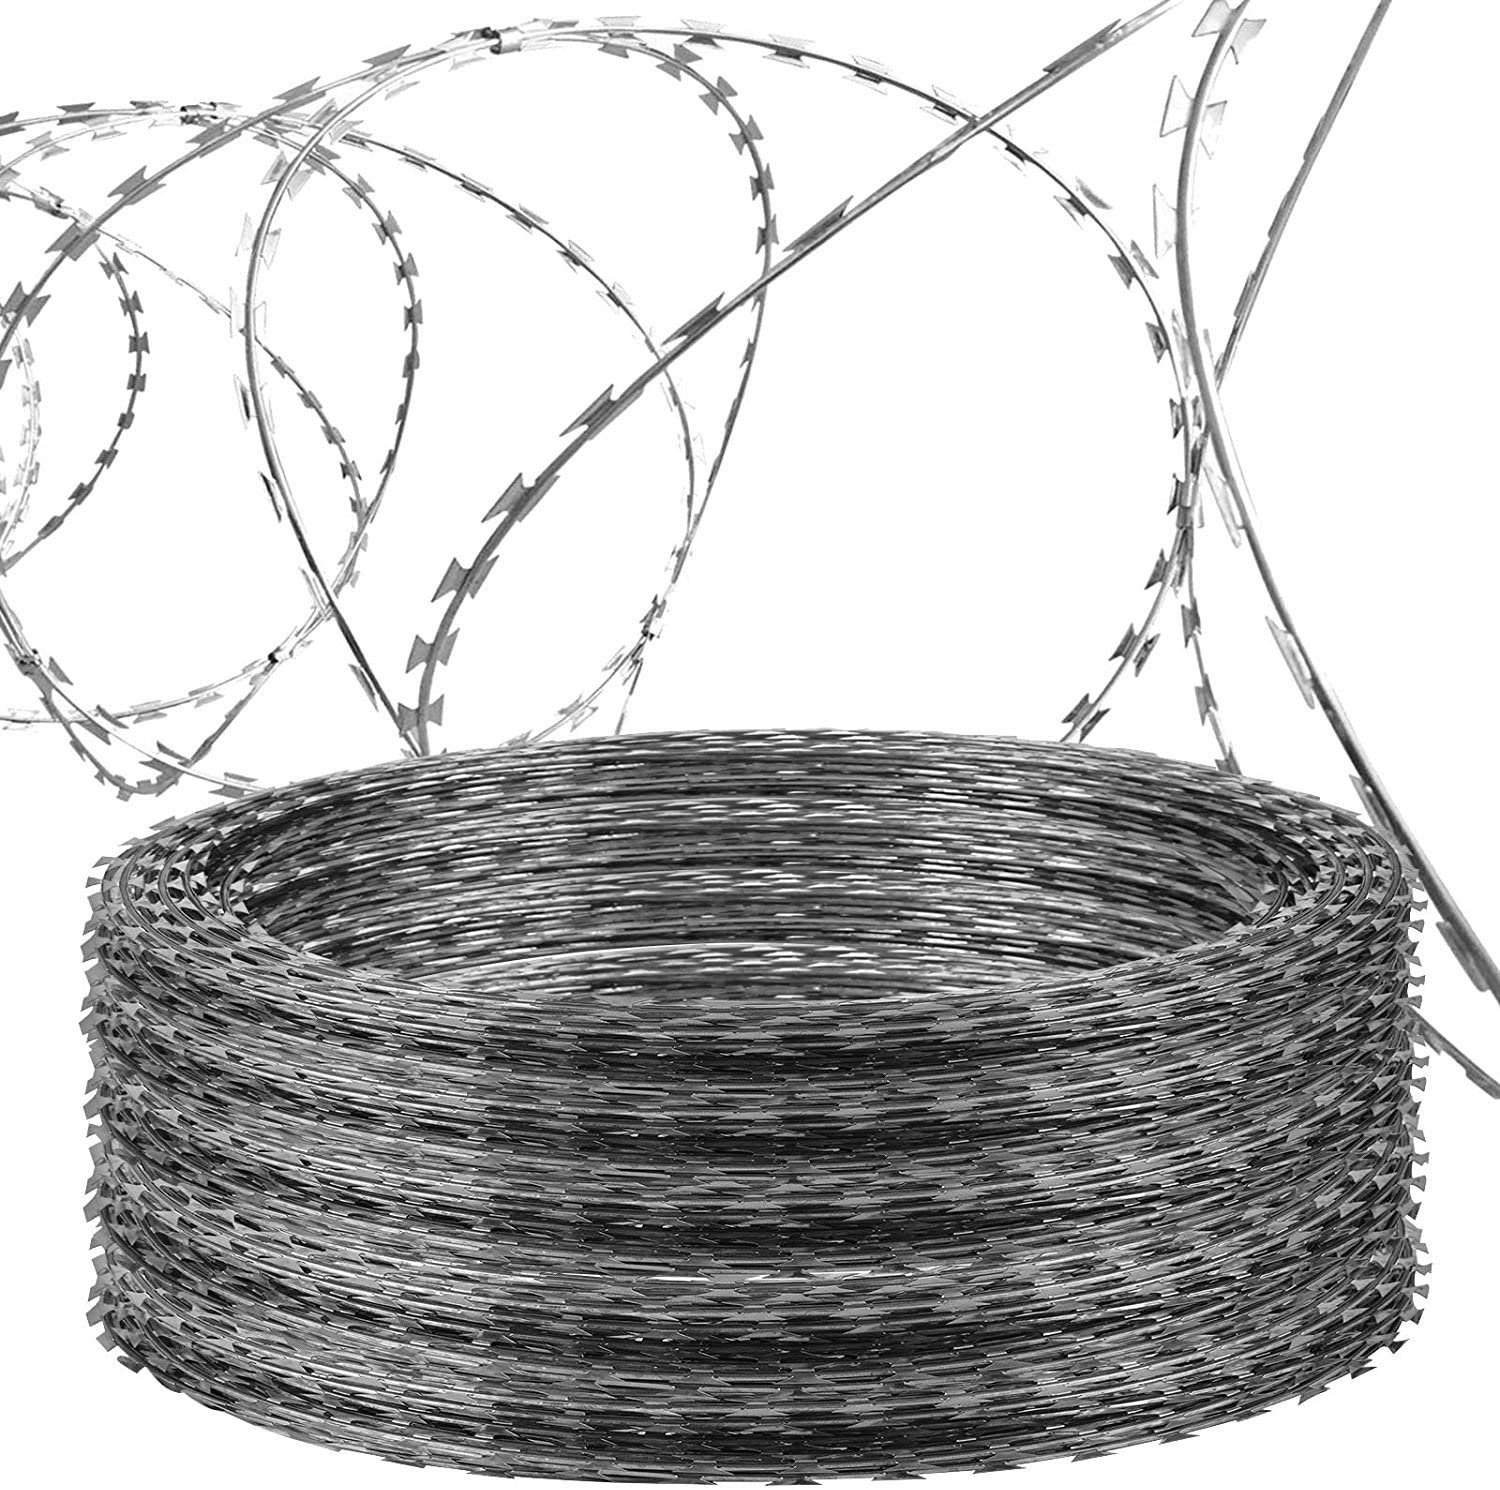 BTO-22 Galvanized Razor Wire Coil hamwe na Loops Diameter 600 mm Yifashishijwe Kumato Kurwanya Ubujura